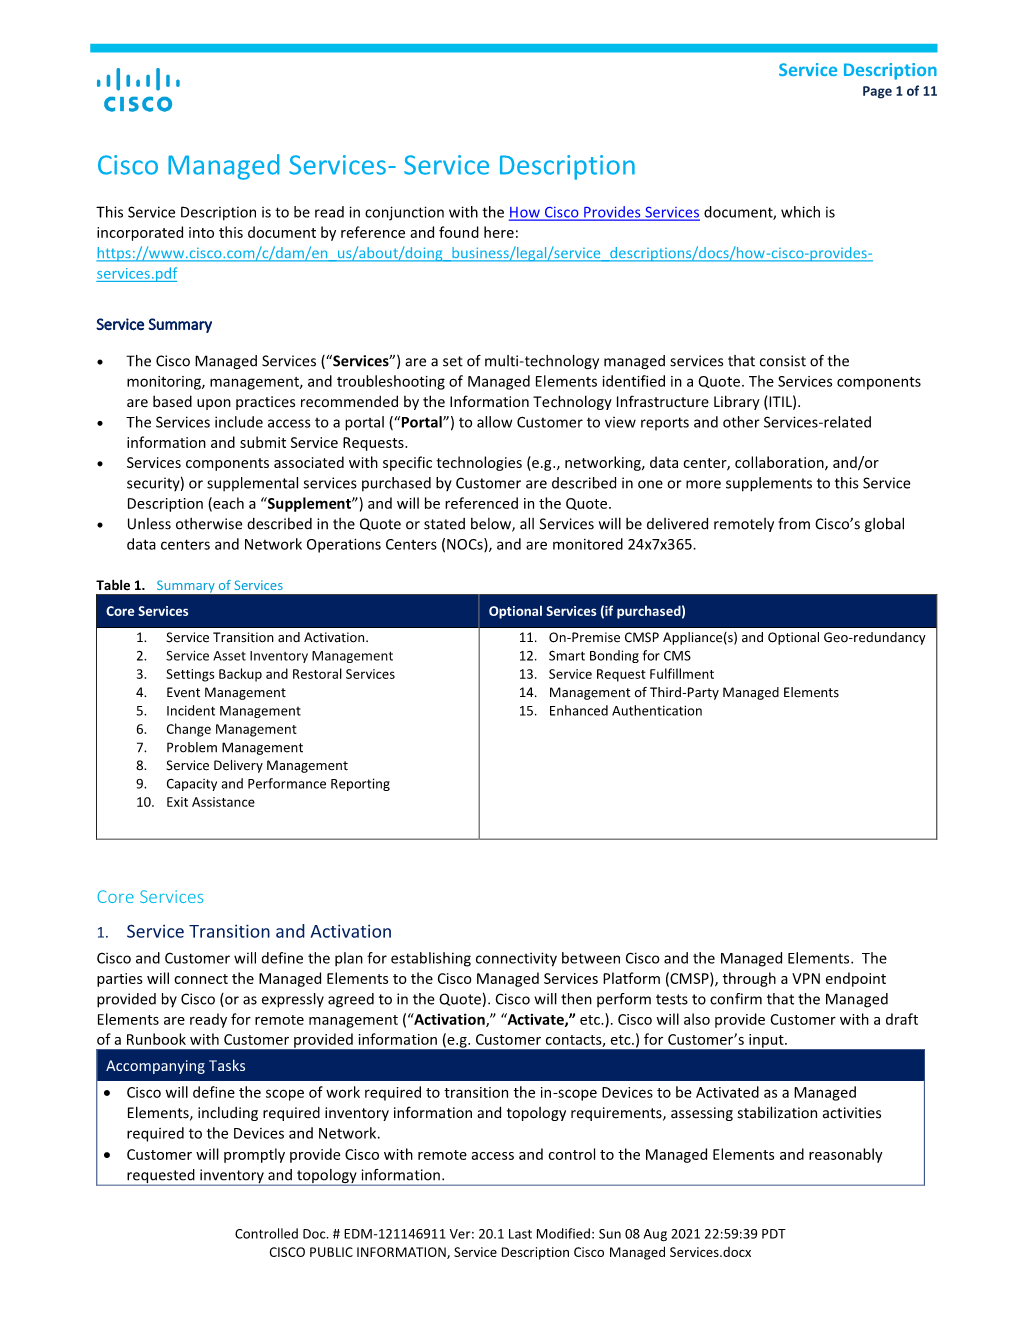 Service Description for Cisco Managed Services